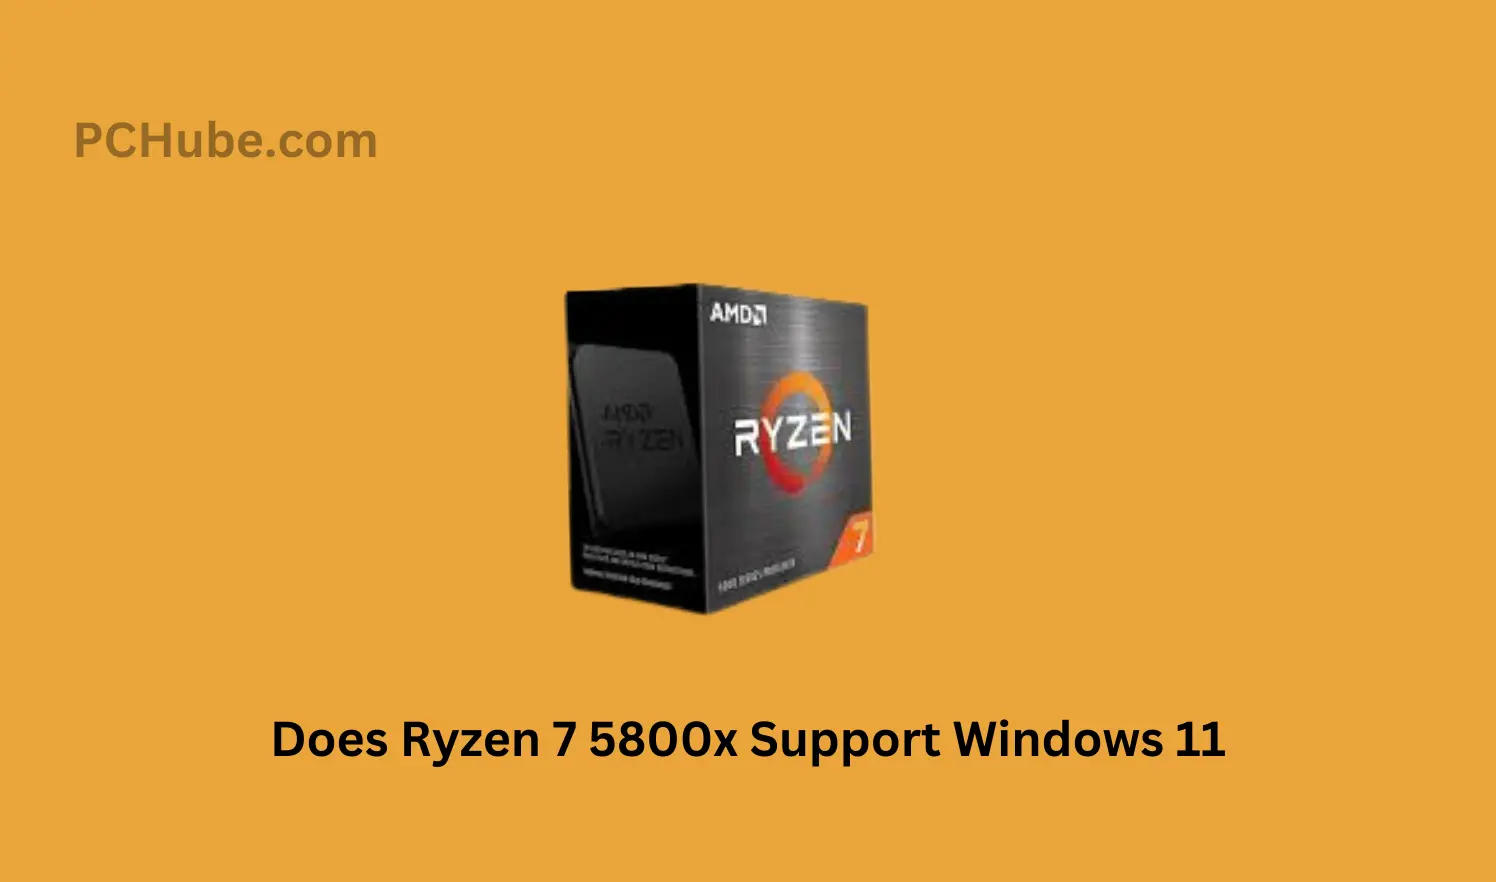 Does Ryzen 7 5800x Support Windows 11?